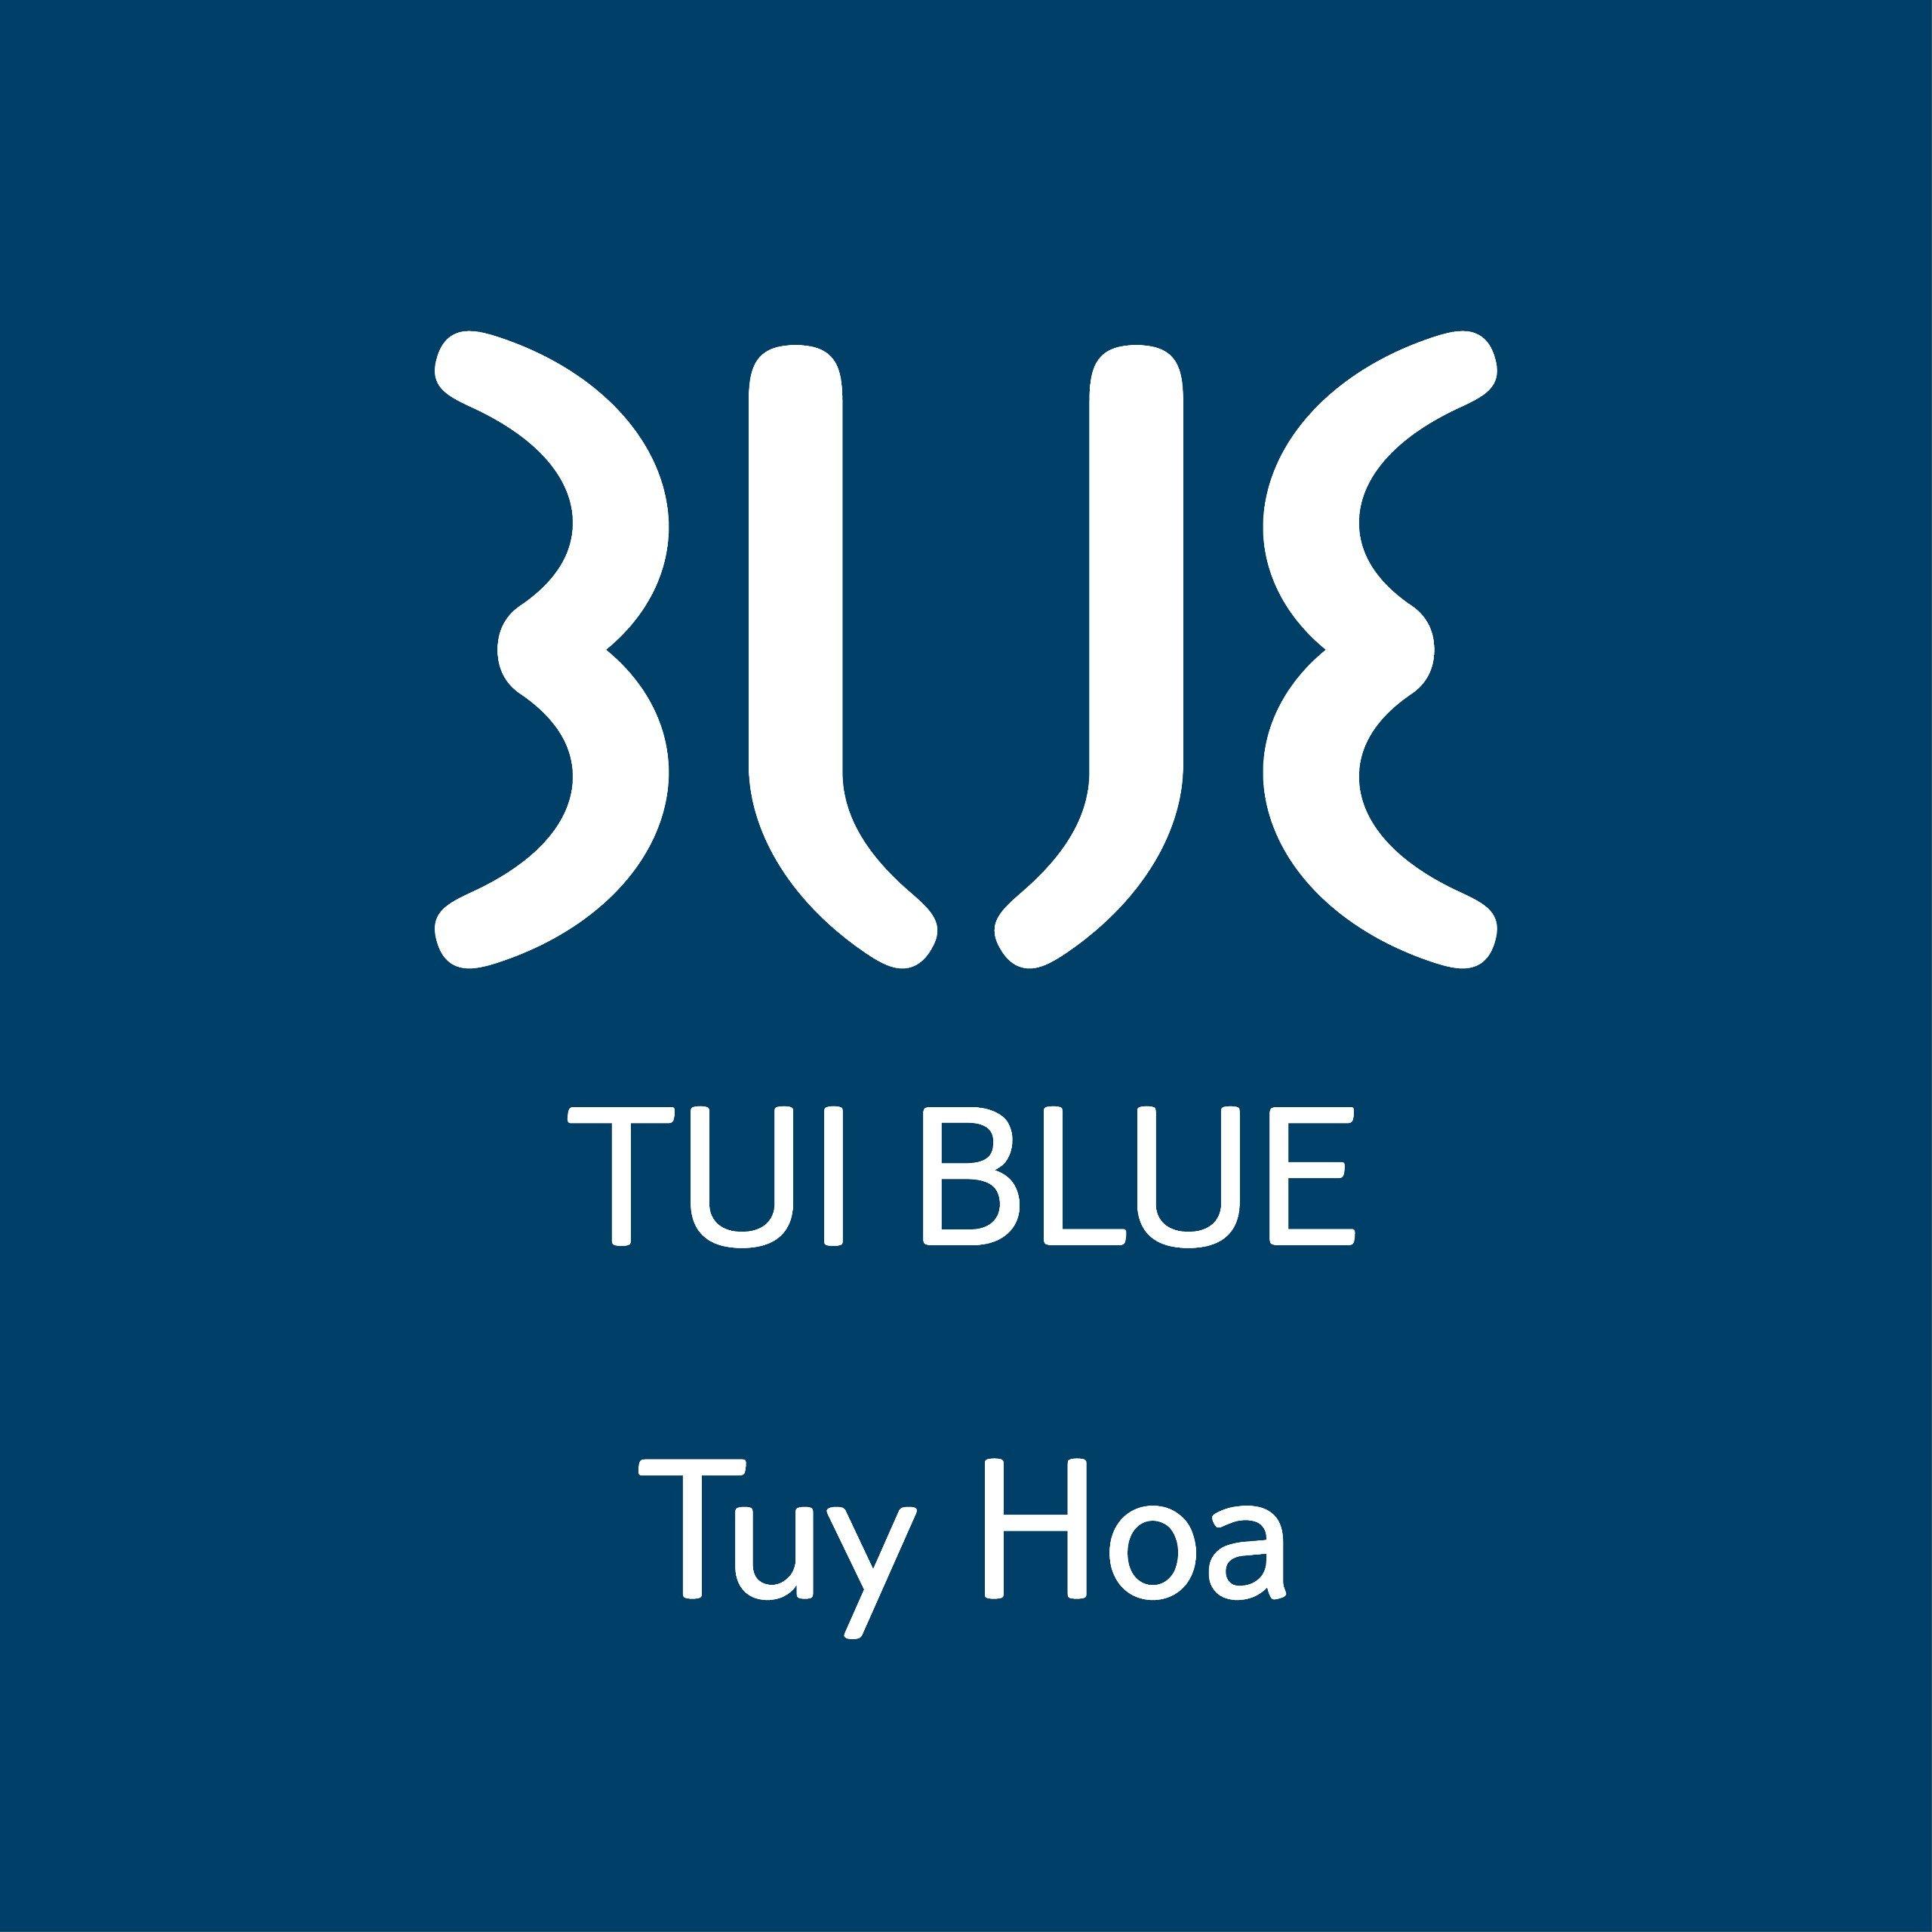 TUI BLUE TUY HOA HOTEL